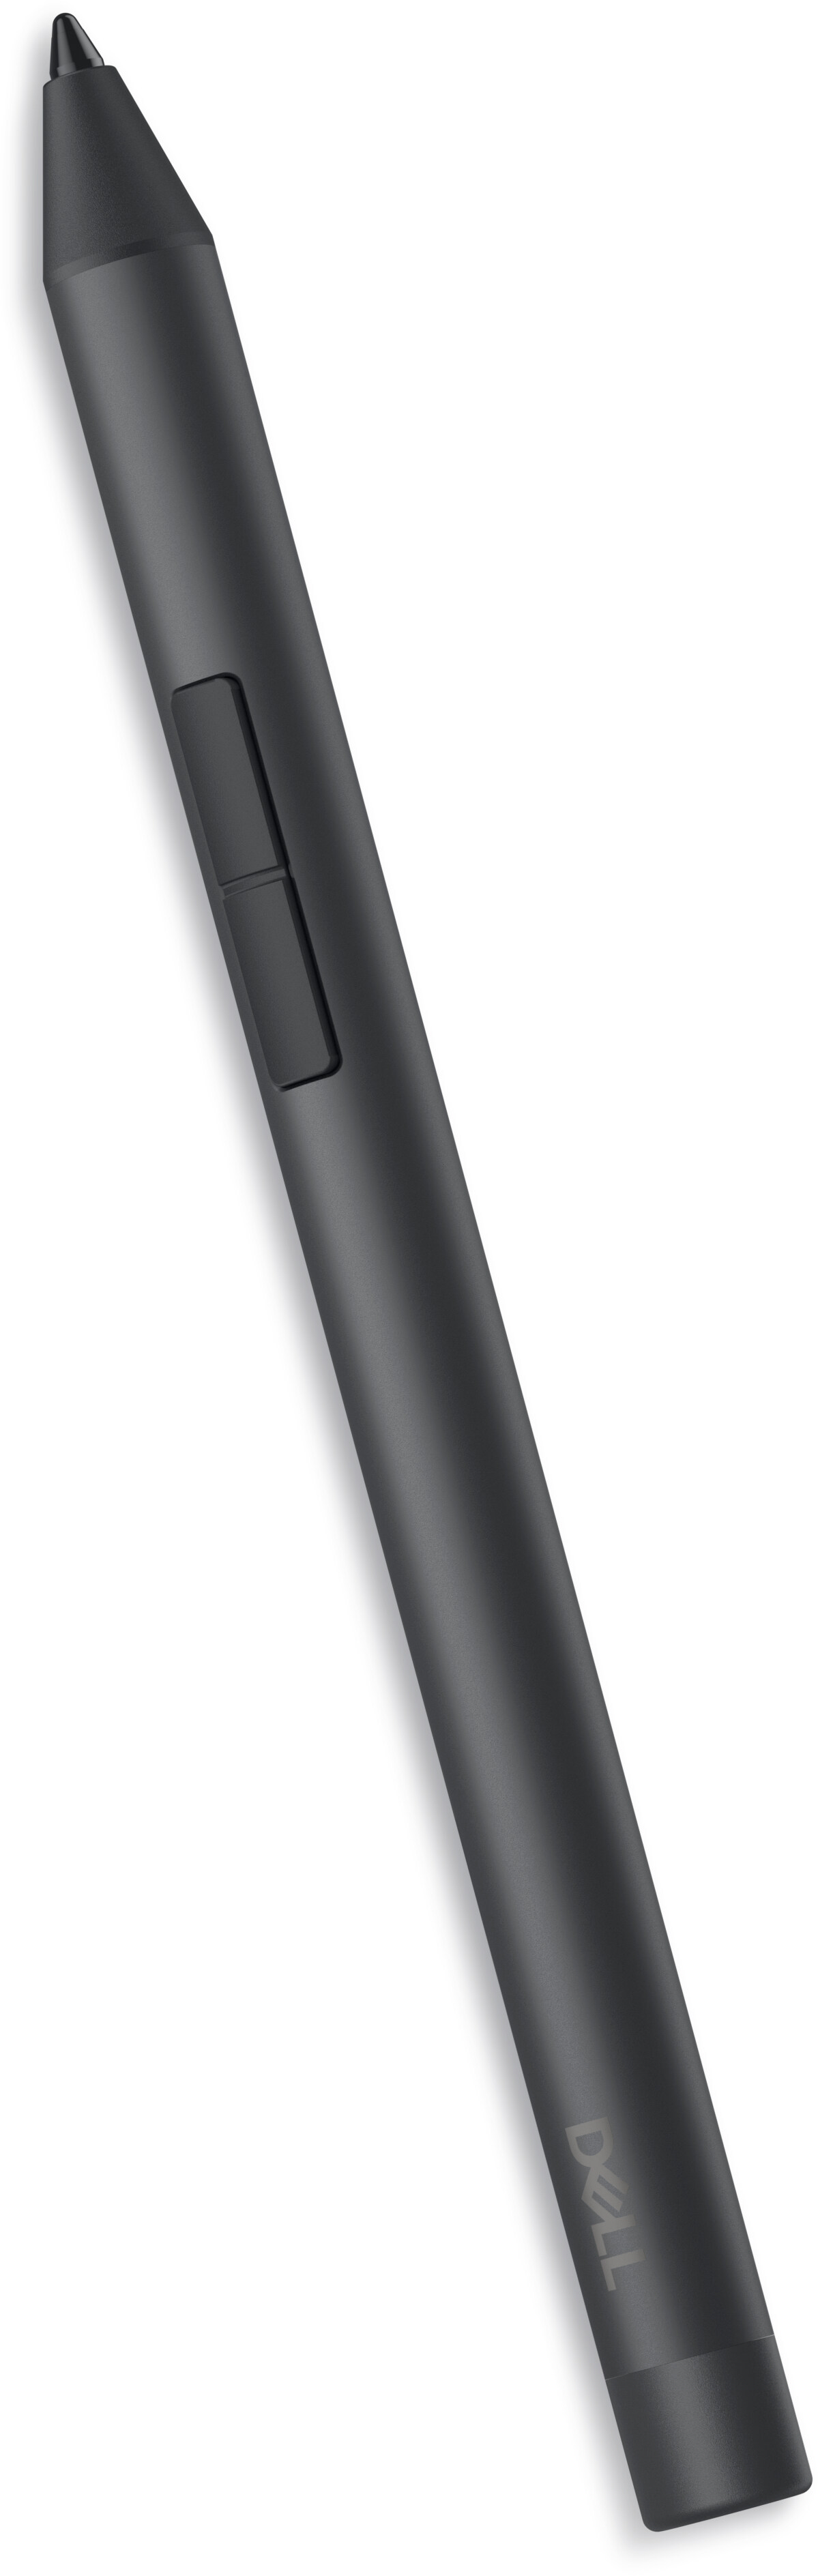 2 pilas AAAA recargables de 450 mAh Ni-MH AA con cargador USB LED para  Microsoft Surface Pen, Active Stylus Pen, para lápiz digital Dell